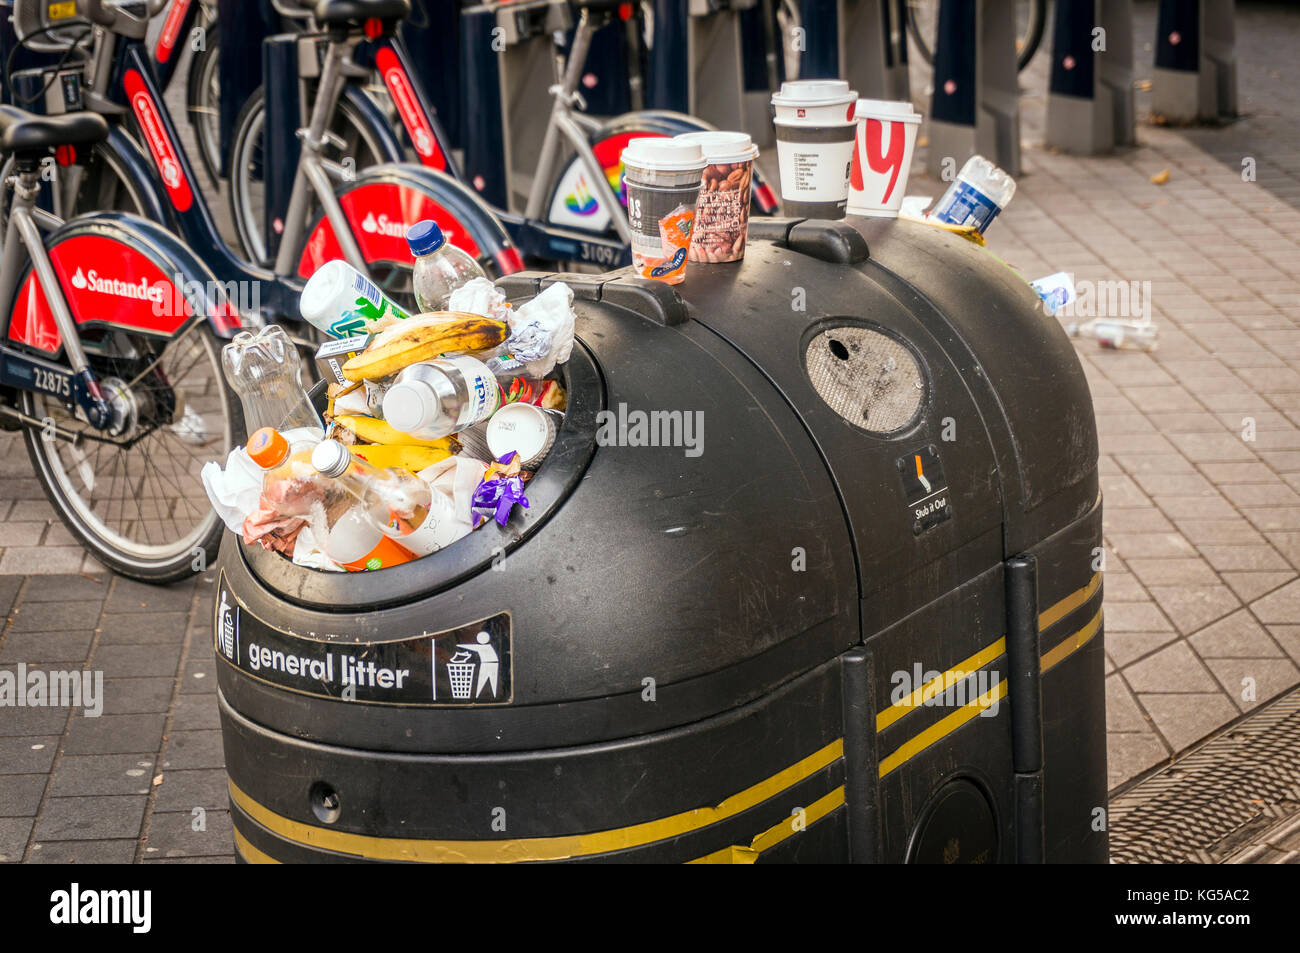 Overflowing litter bin in Kensington, London, UK Stock Photo